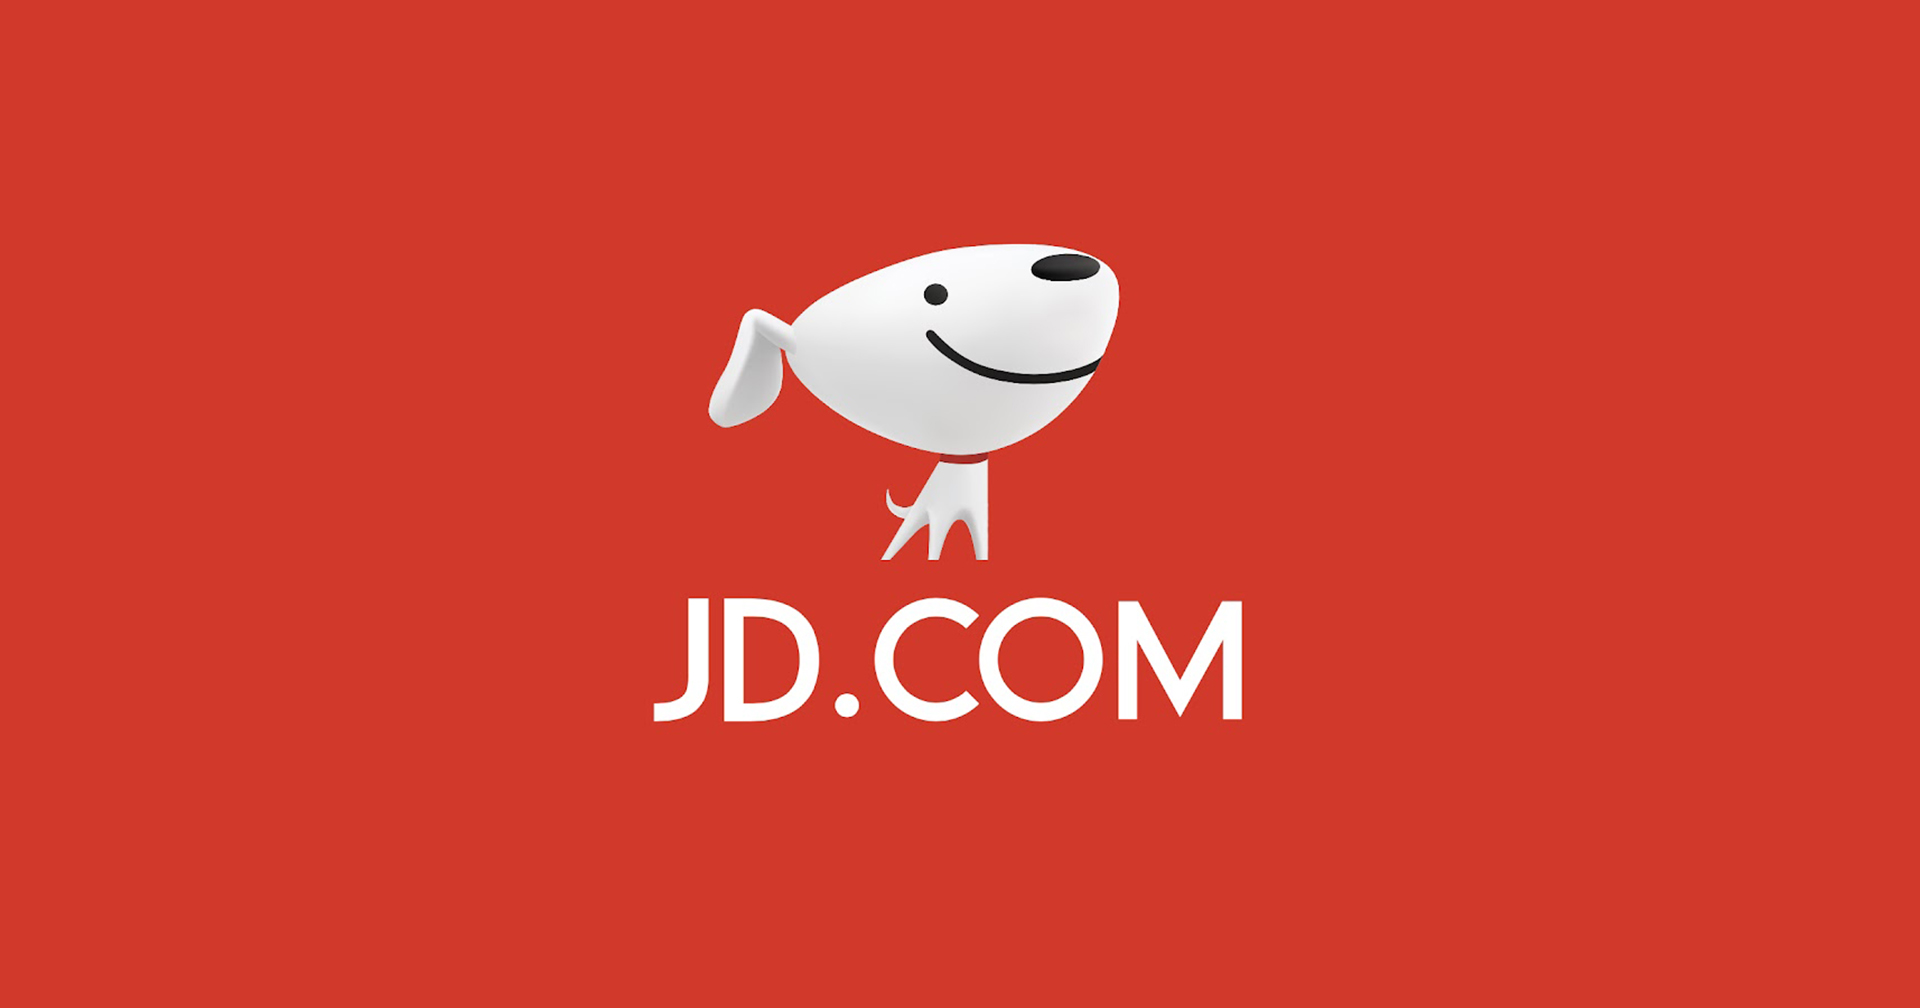 JD.com ยักษ์ใหญ่อีคอมเมิร์ซจีน เล็งถอนการลงทุนจากอินโดนีเซียและไทย